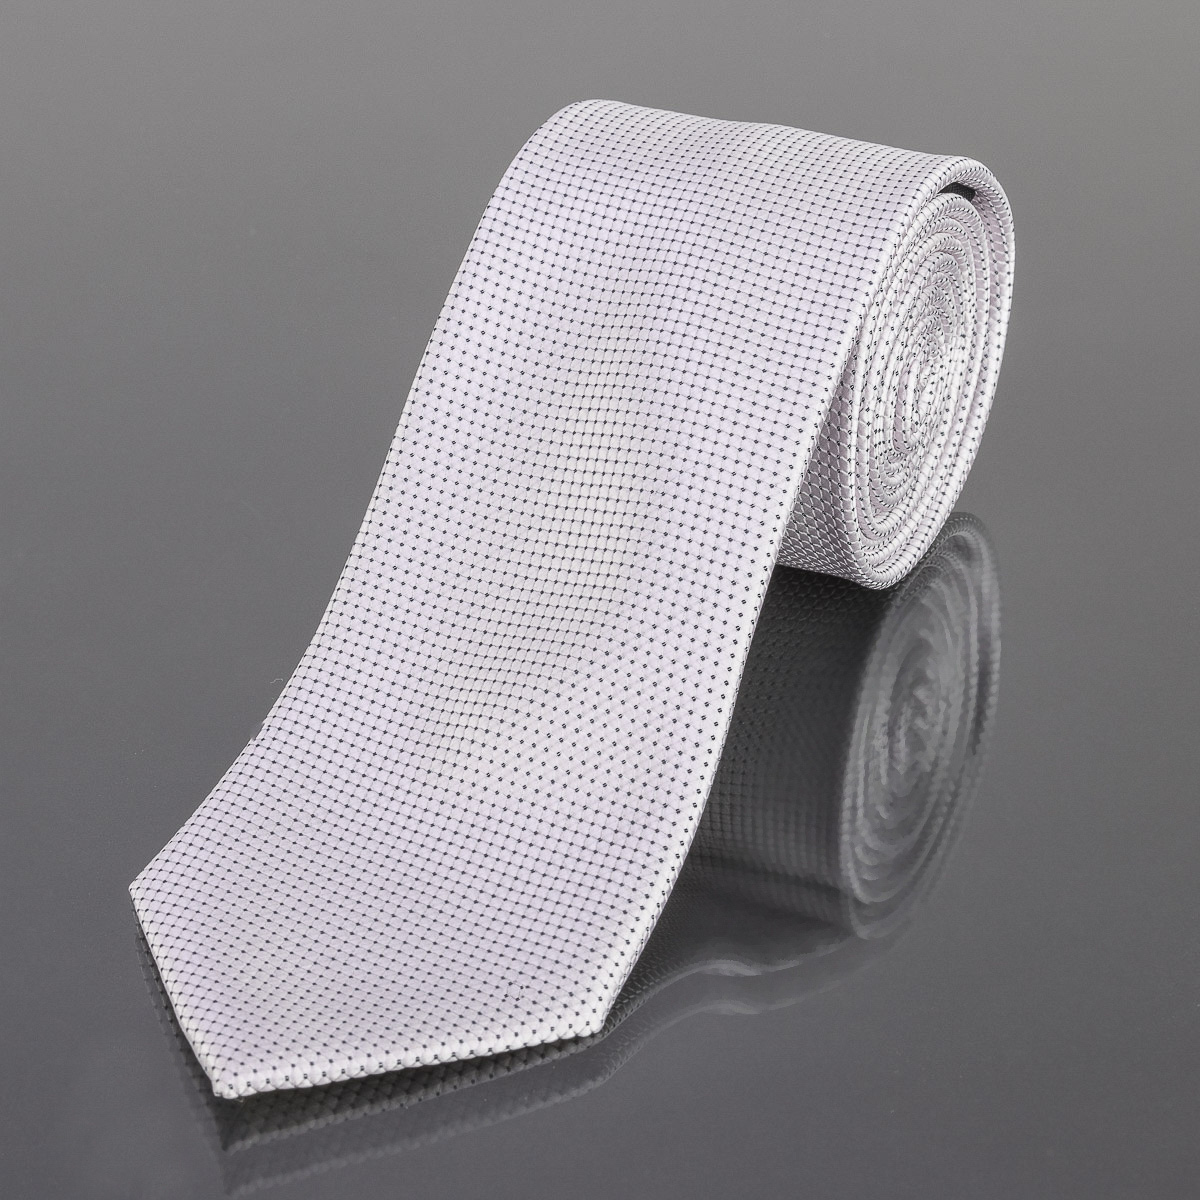 Kravata pánská AMJ tečkovaná KU1545, bílá